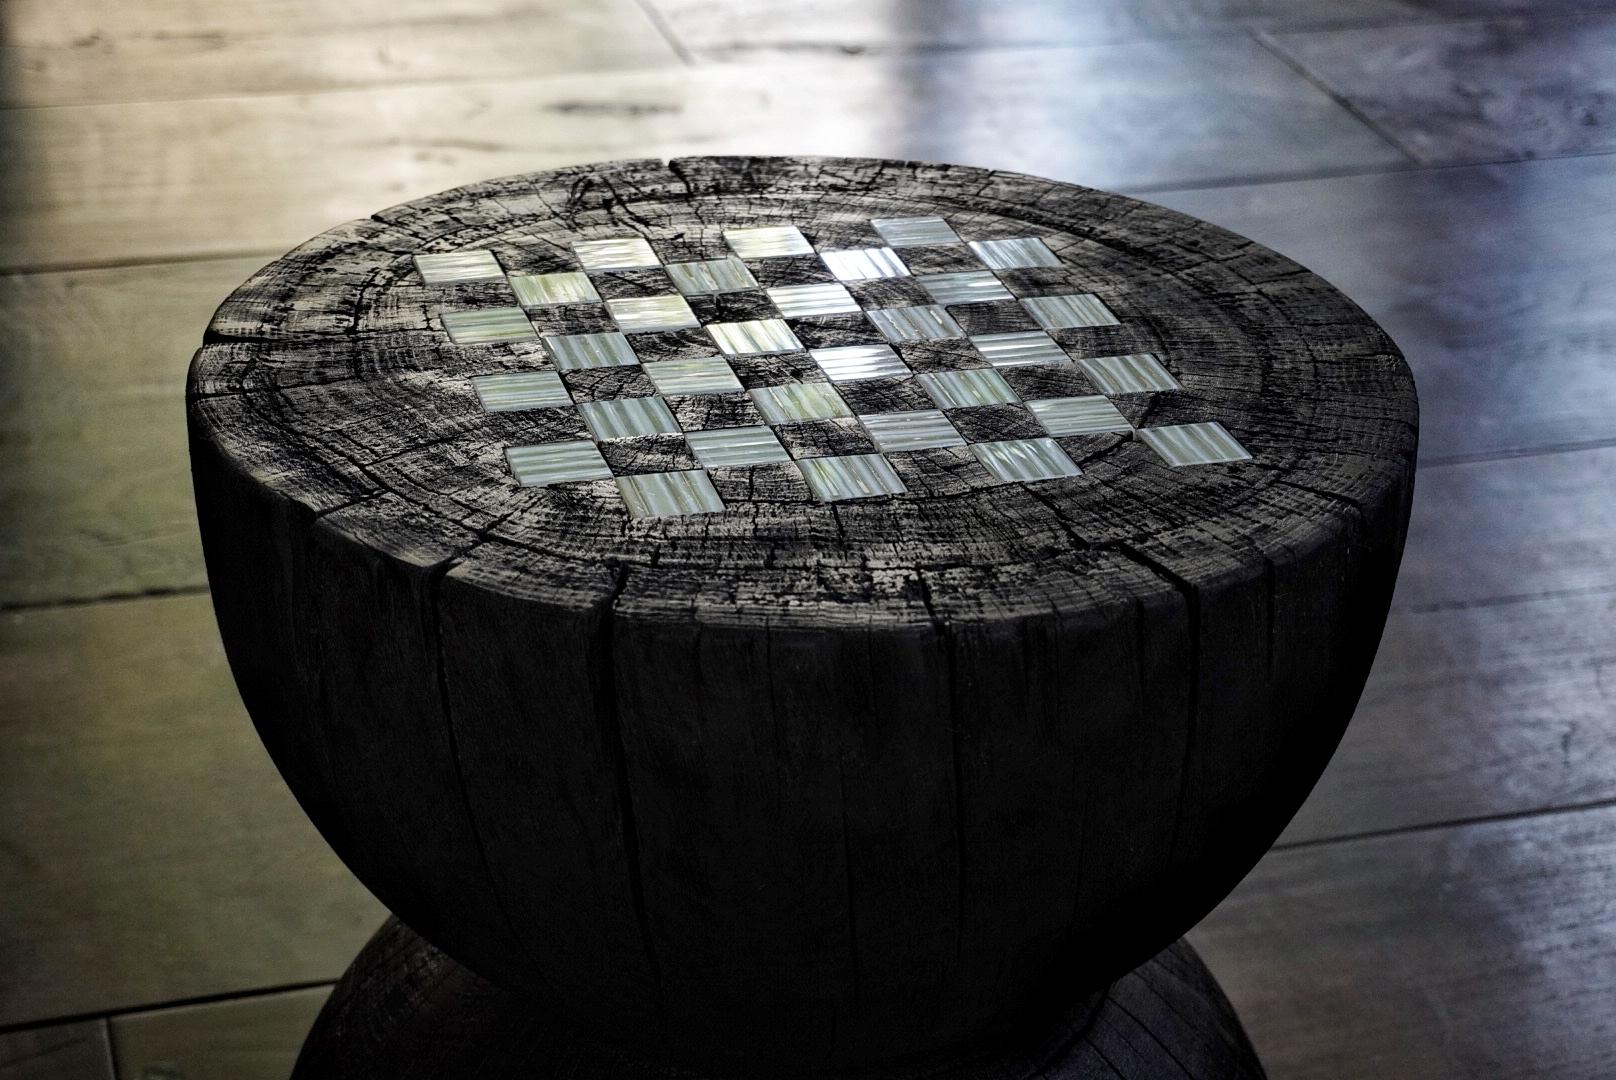 Table d'échecs
Cette édition Jeux de société présente des jeux classiques et des pièces décoratives comme le Backgammon, les échecs et le Tic Tac Toe, fabriqués en bois et en verre.

Depuis 2000, Orfeo Quagliata offre une remarquable cohérence basée